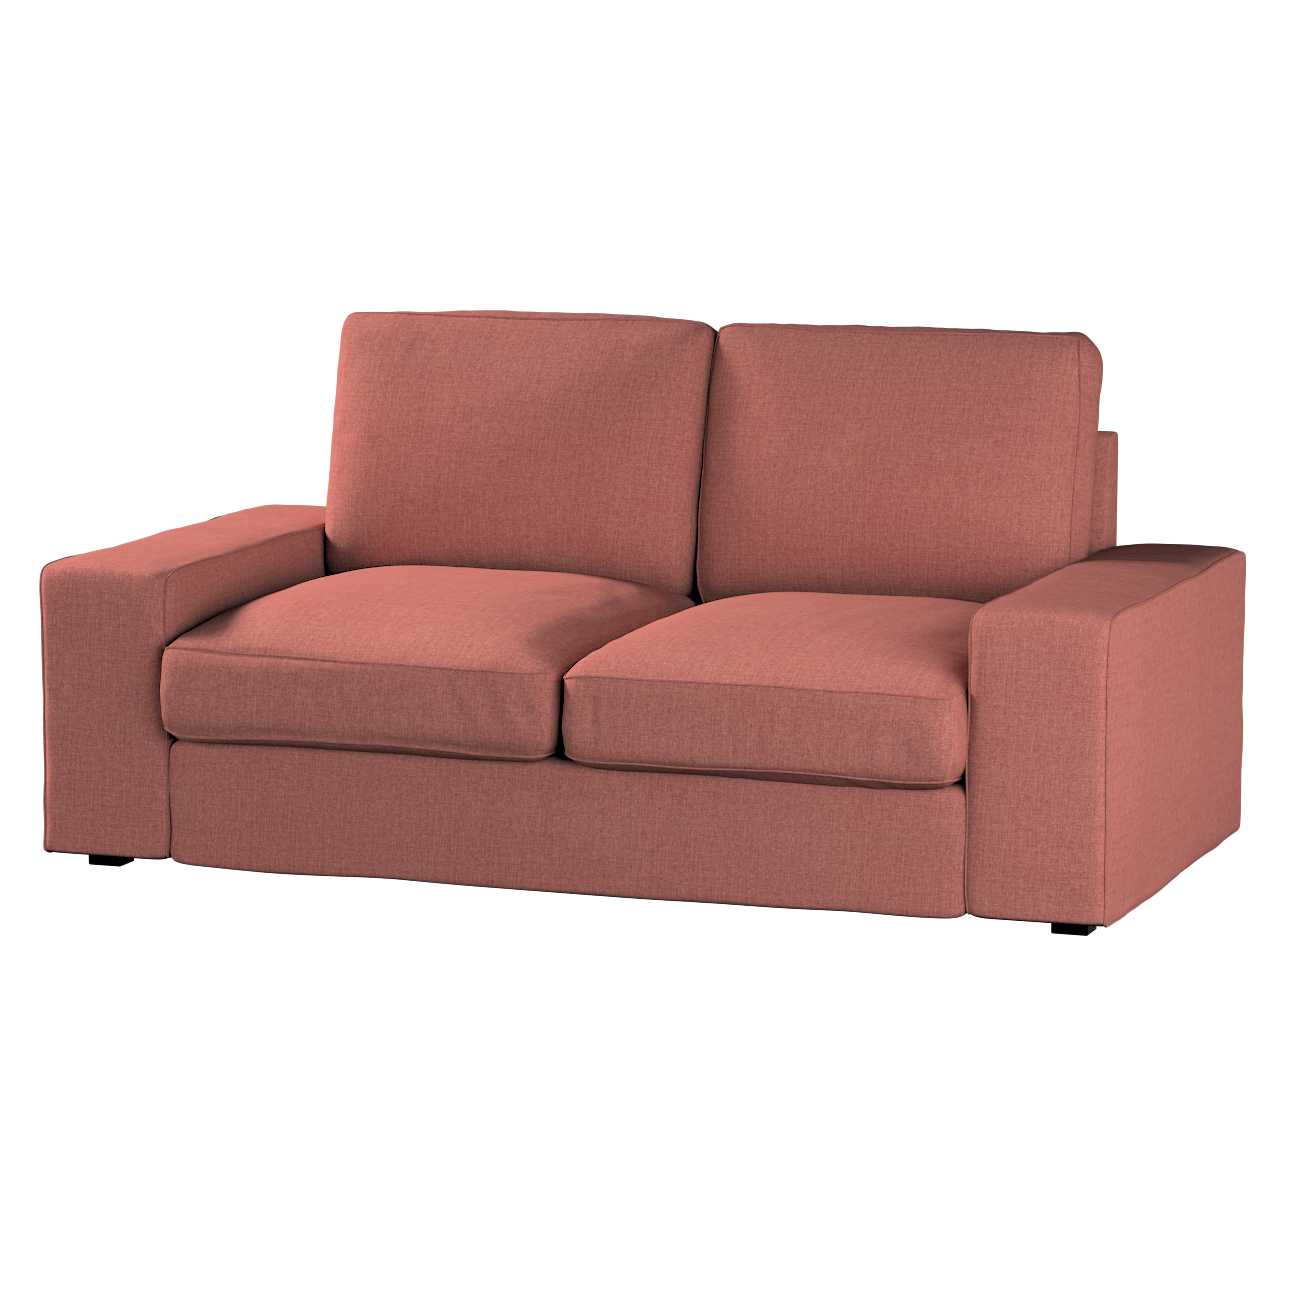 Bezug für Kivik 2-Sitzer Sofa, cognac braun, Bezug für Sofa Kivik 2-Sitzer, günstig online kaufen